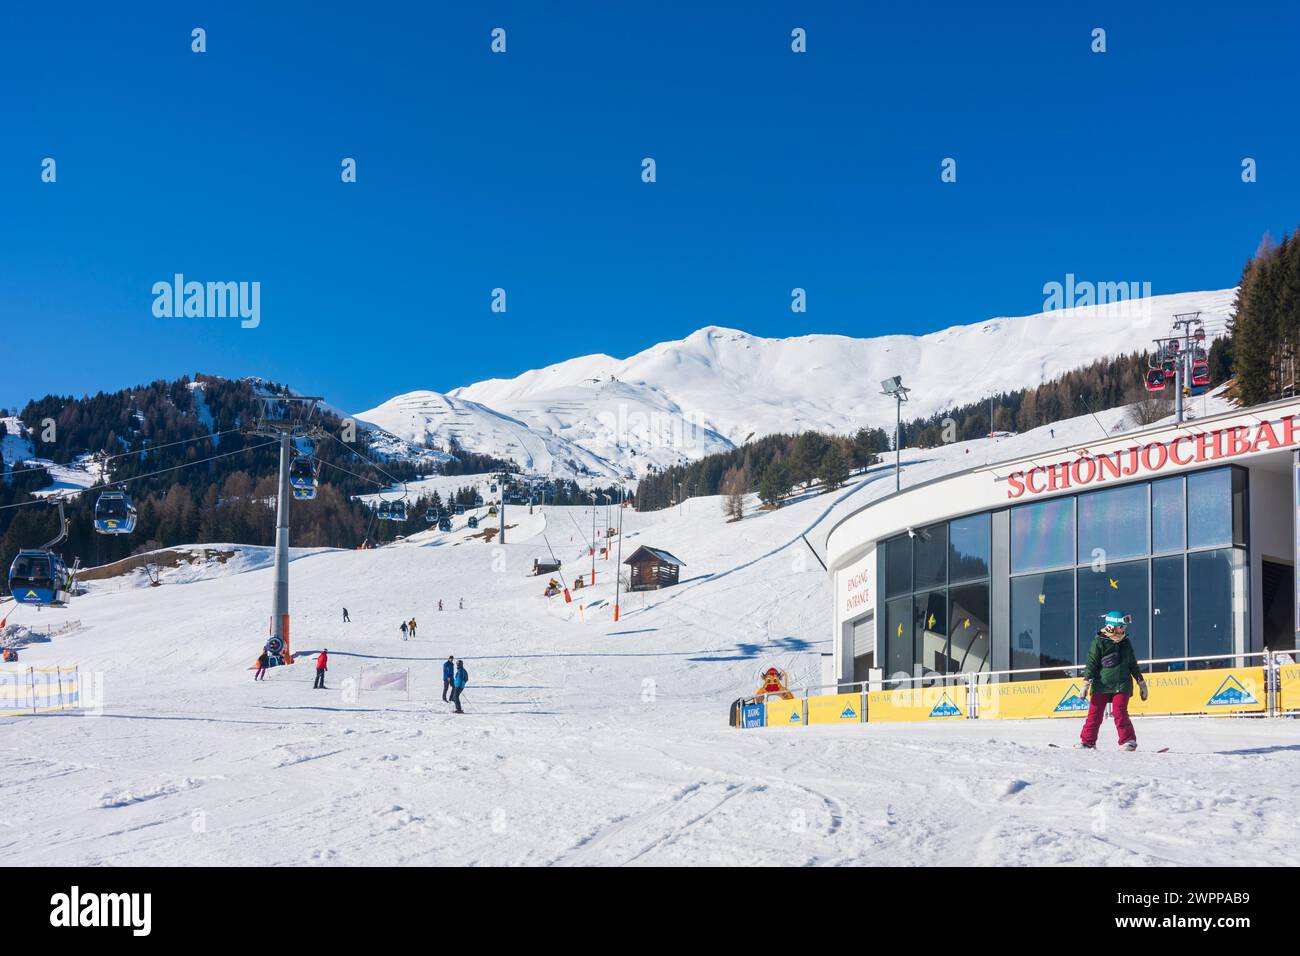 Fiss, remontées mécaniques, pistes de ski, ski alpin, Alpes Samnaun à Serfaus-Fiss-Ladis, Tyrol, Autriche Banque D'Images